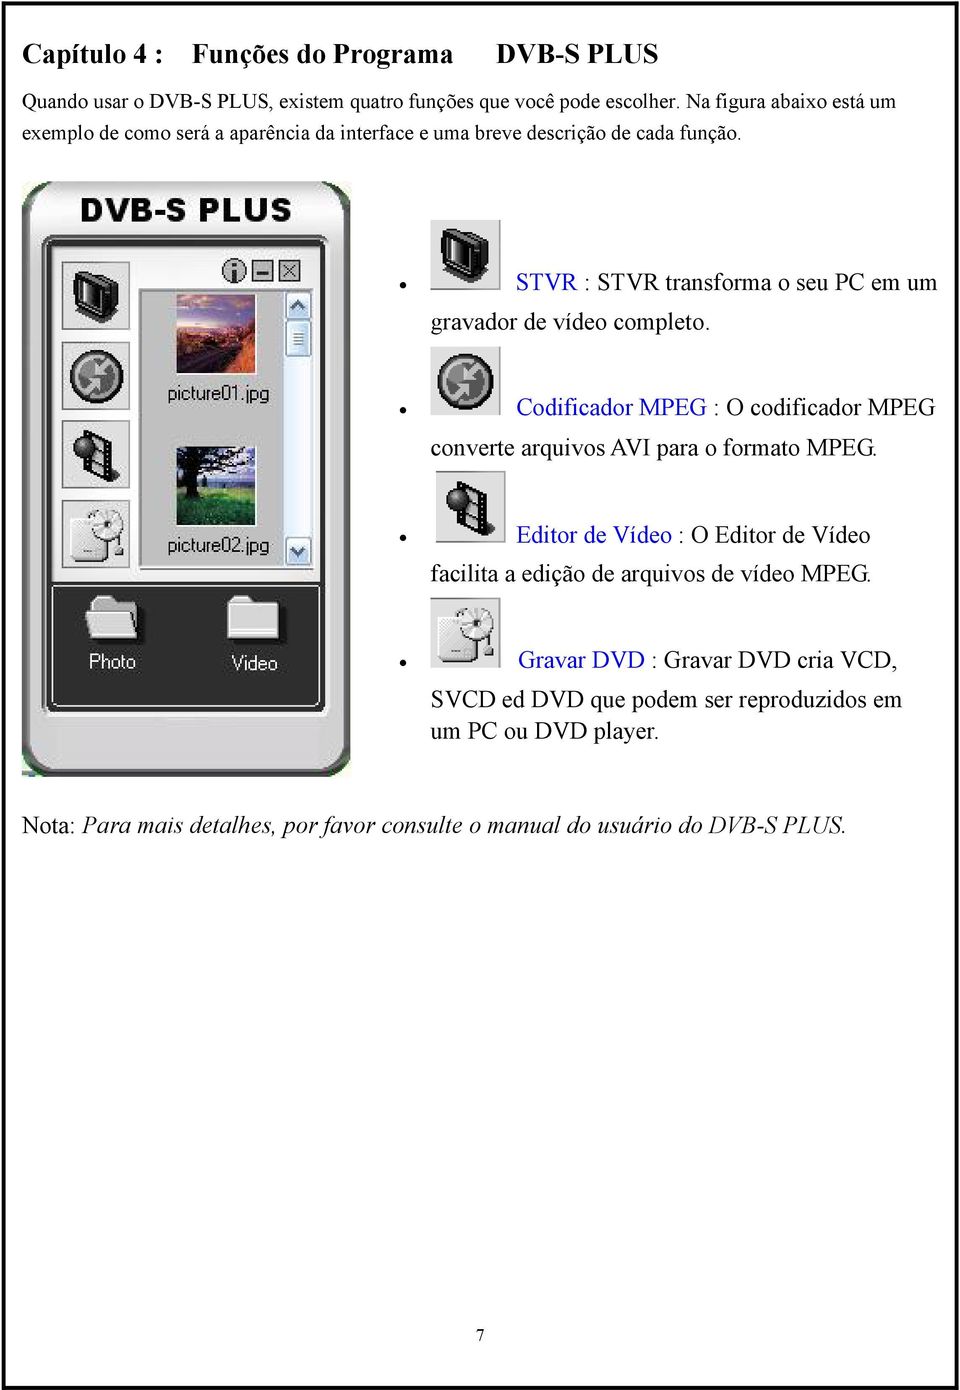 STVR : STVR transforma o seu PC em um gravador de vídeo completo. Codificador MPEG : O codificador MPEG converte arquivos AVI para o formato MPEG.